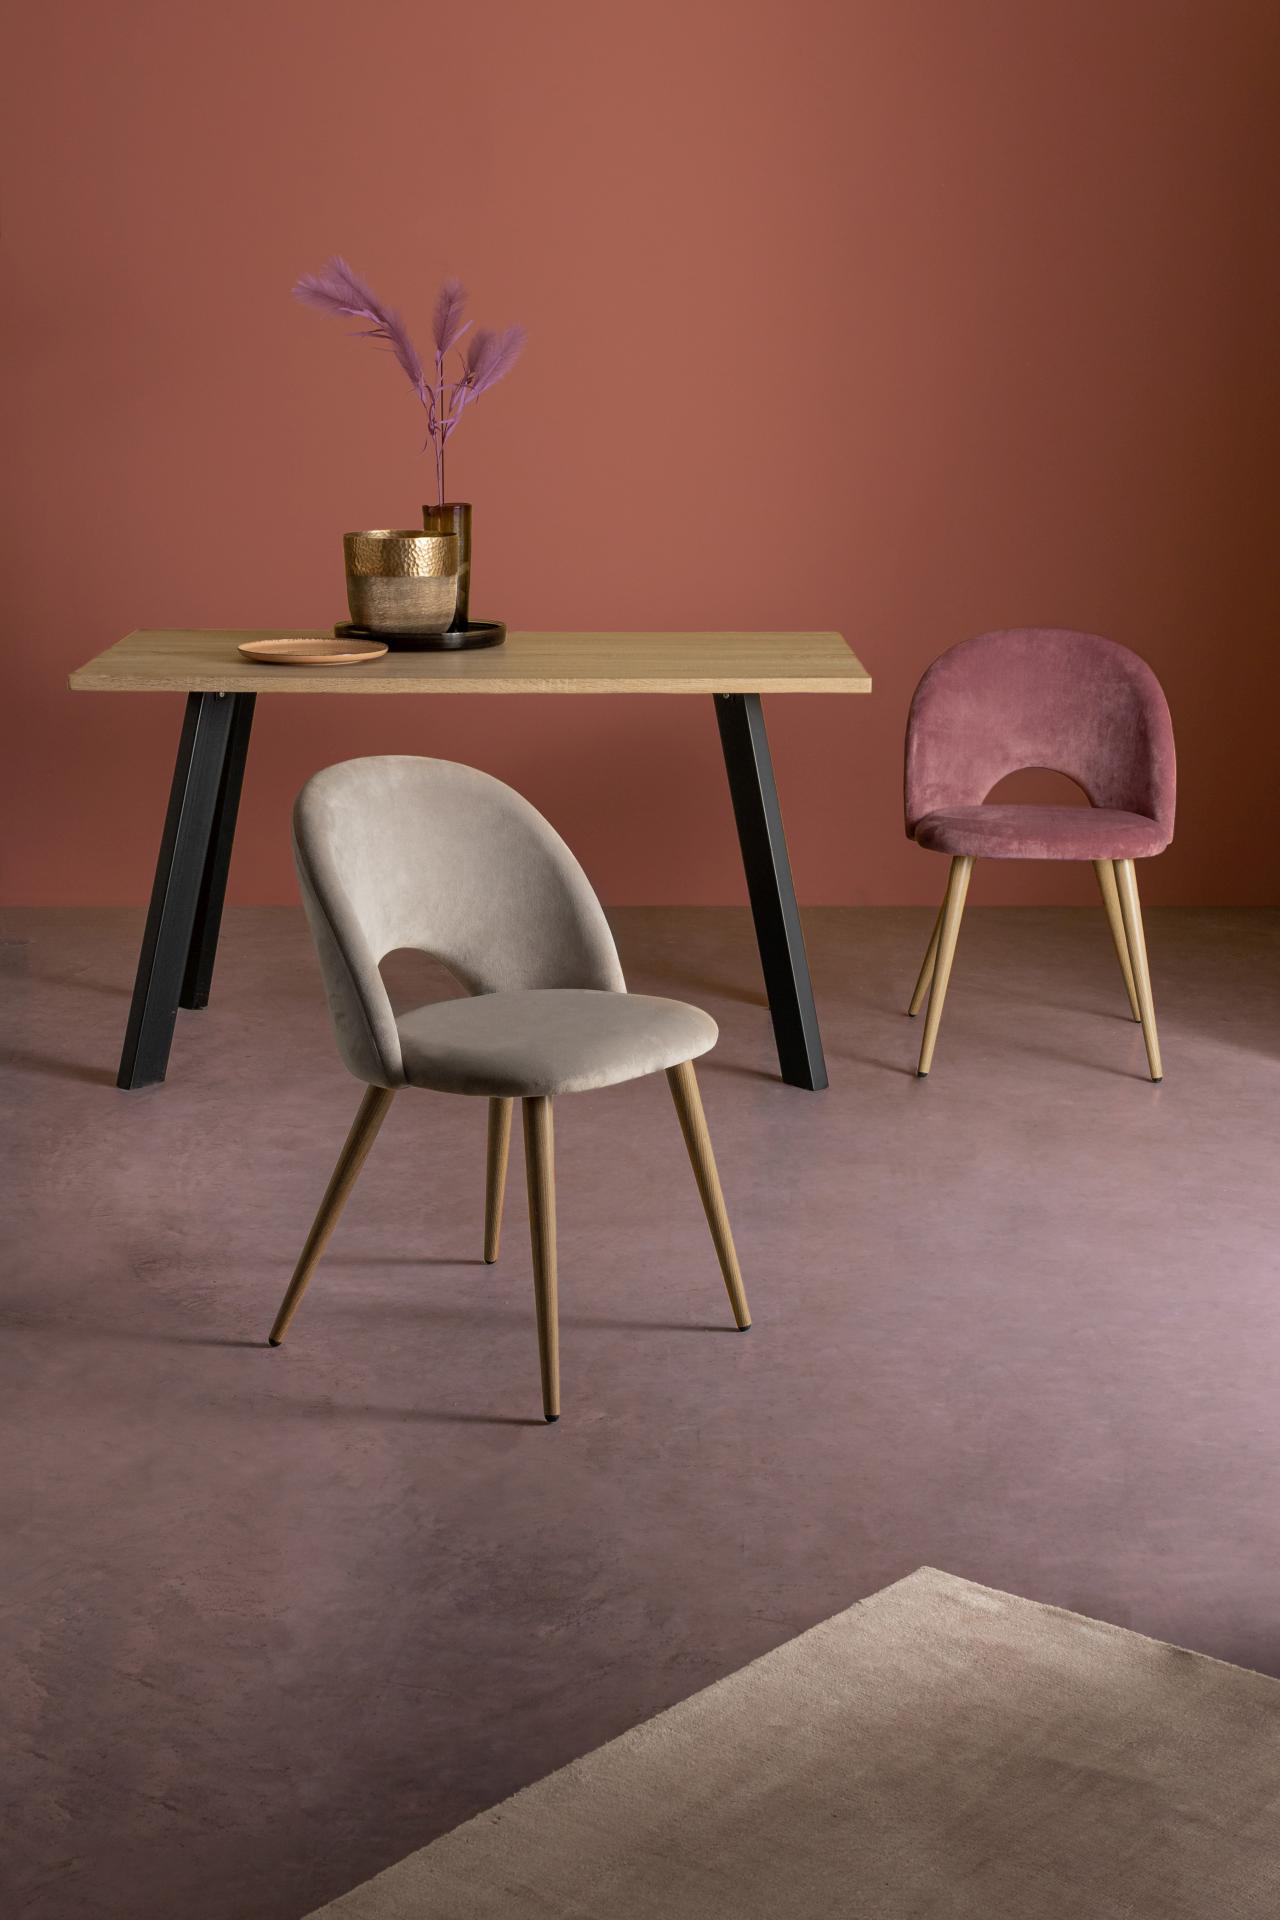 Der Esstisch Giant überzeugt mit seinem modernem Design. Gefertigt wurde er aus MDF, welches eine Holz-Optik besitzt. Das Gestell des Tisches ist aus Metall und hat eine schwarze Farbe. Der Tisch hat eine Breite von 140 cm.